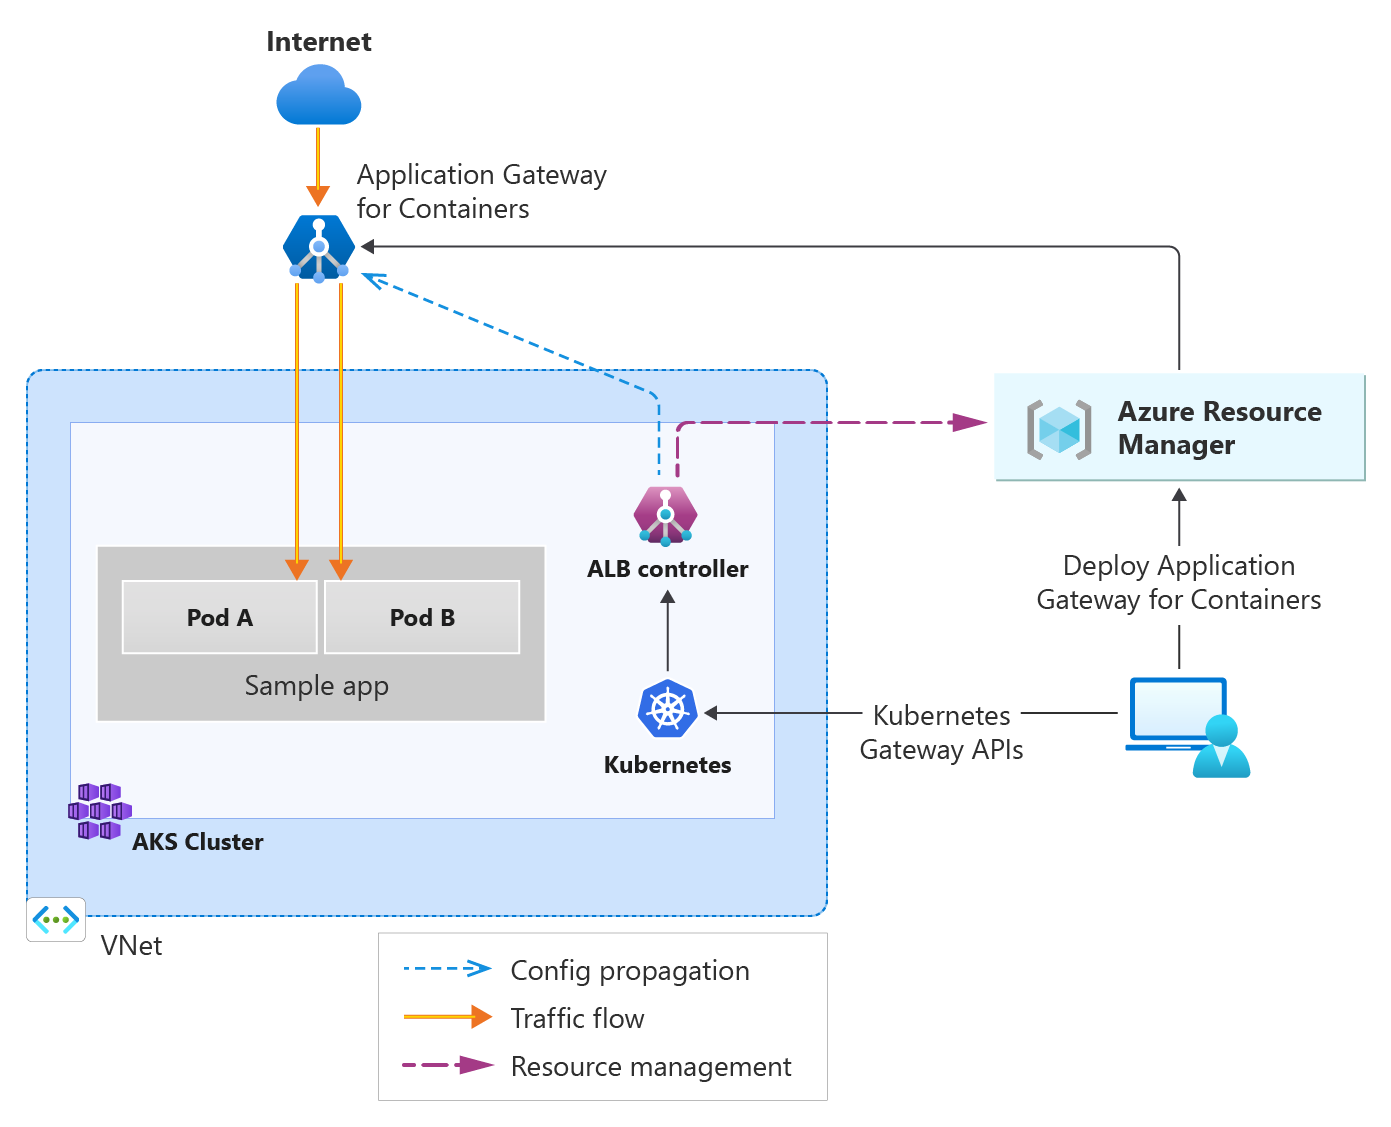 インターネットから Application Gateway for Containers に送信され、さらに AKS 内のバックエンド ポッドに送信されるトラフィックを示す図。